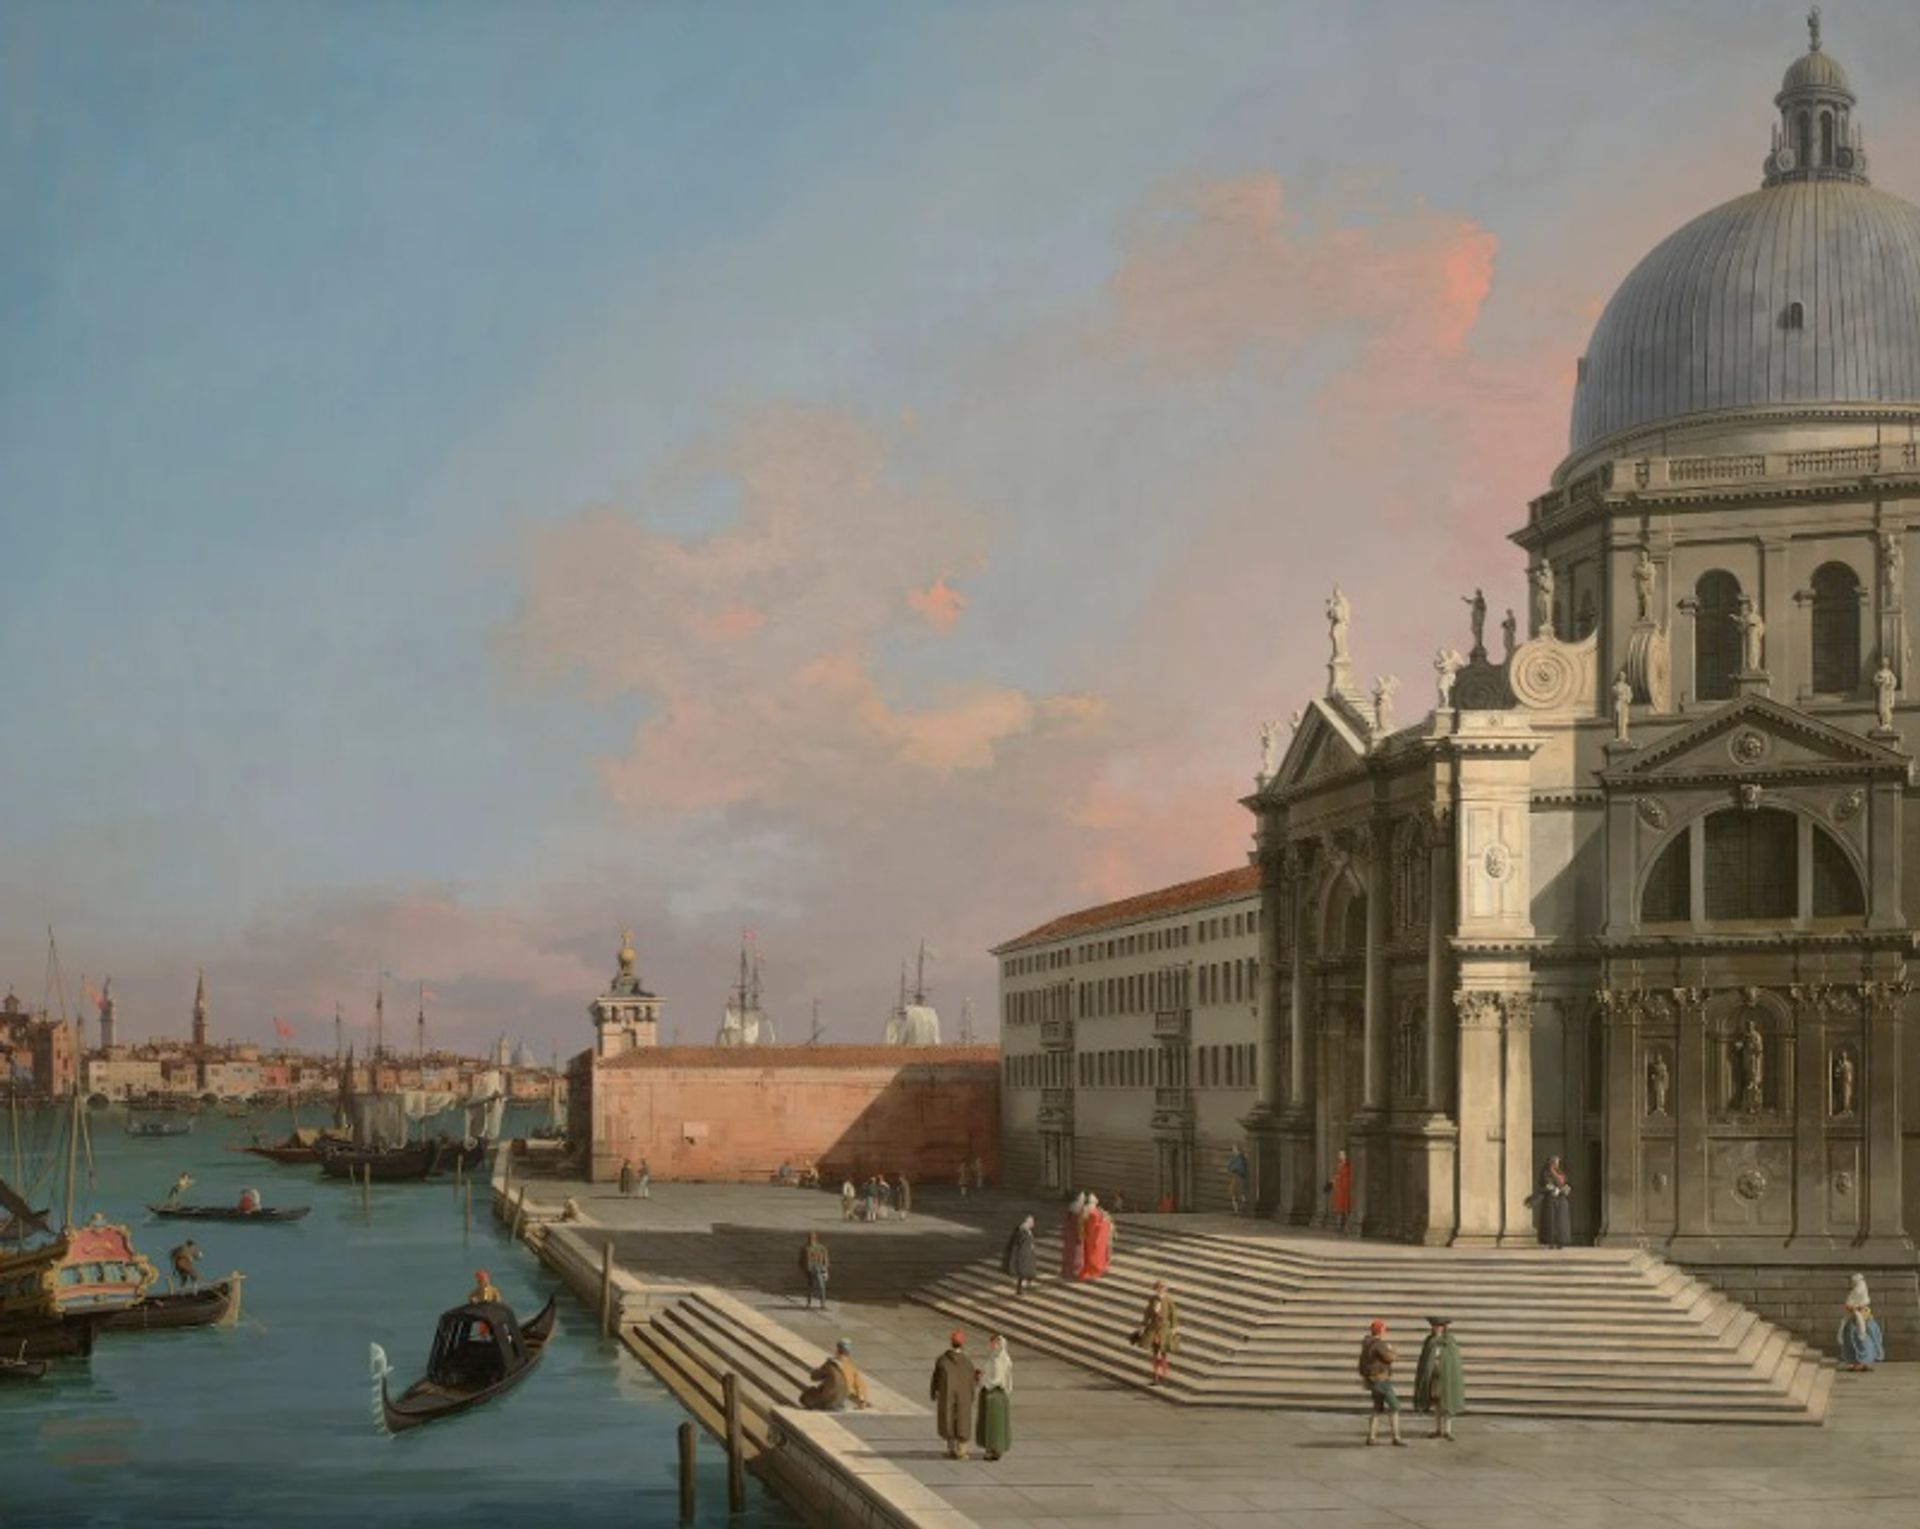 תעלת ג'ובאני אנטוניו, הנקראת קנאלטו, ונציה, התעלה הגדולה במבט מזרחה עם סנטה מריה דלה סאלוט

באדיבות מוזיאוני האמנויות סן פרנסיסקו, כריסטי'ס